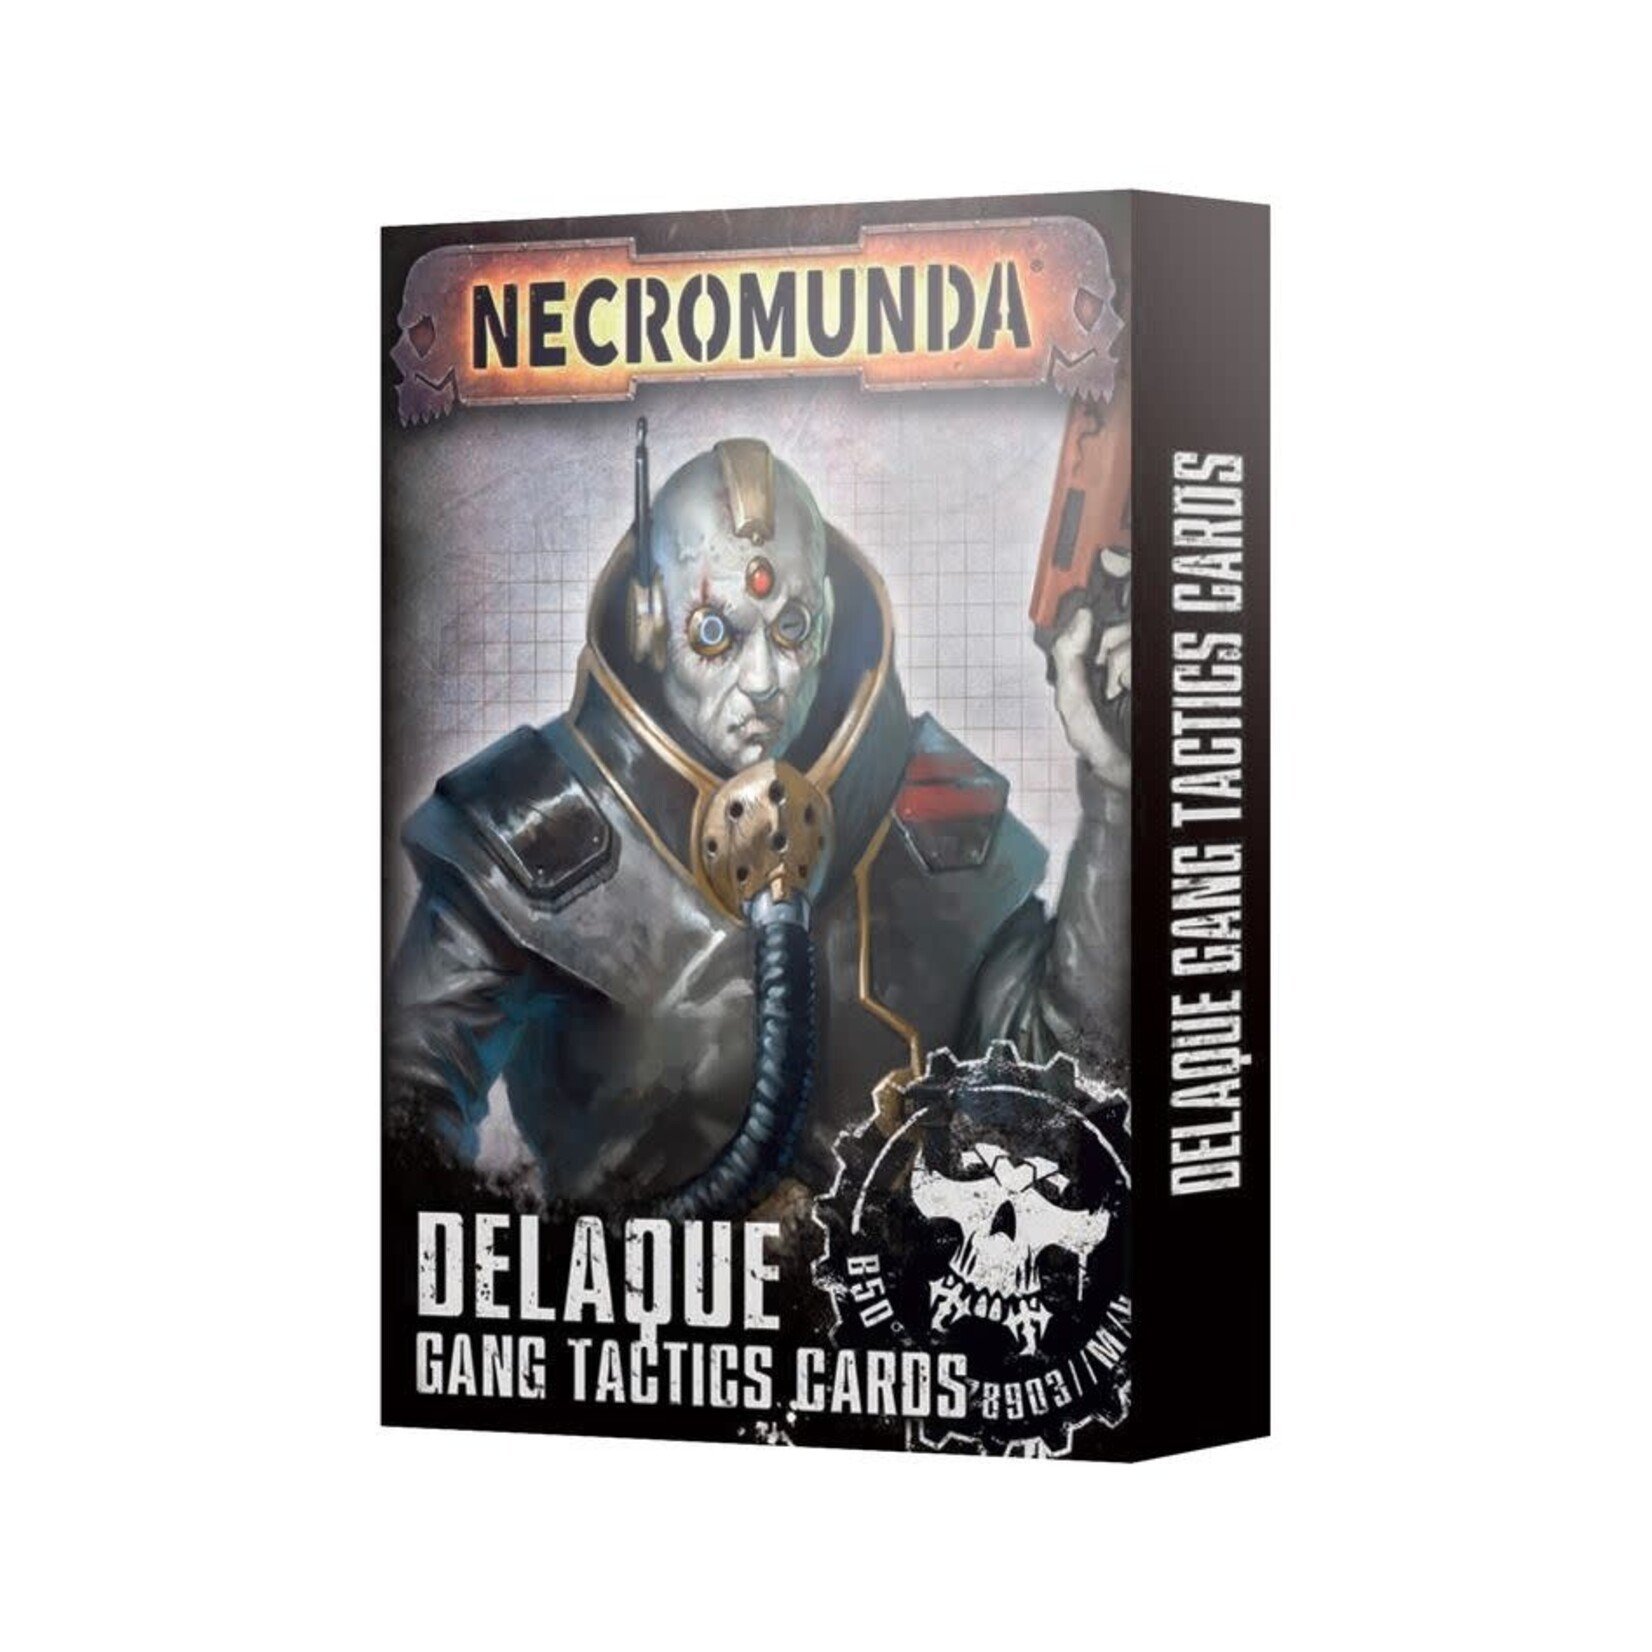 Games Workshop Necromunda Delaque Gang Tactics Cards